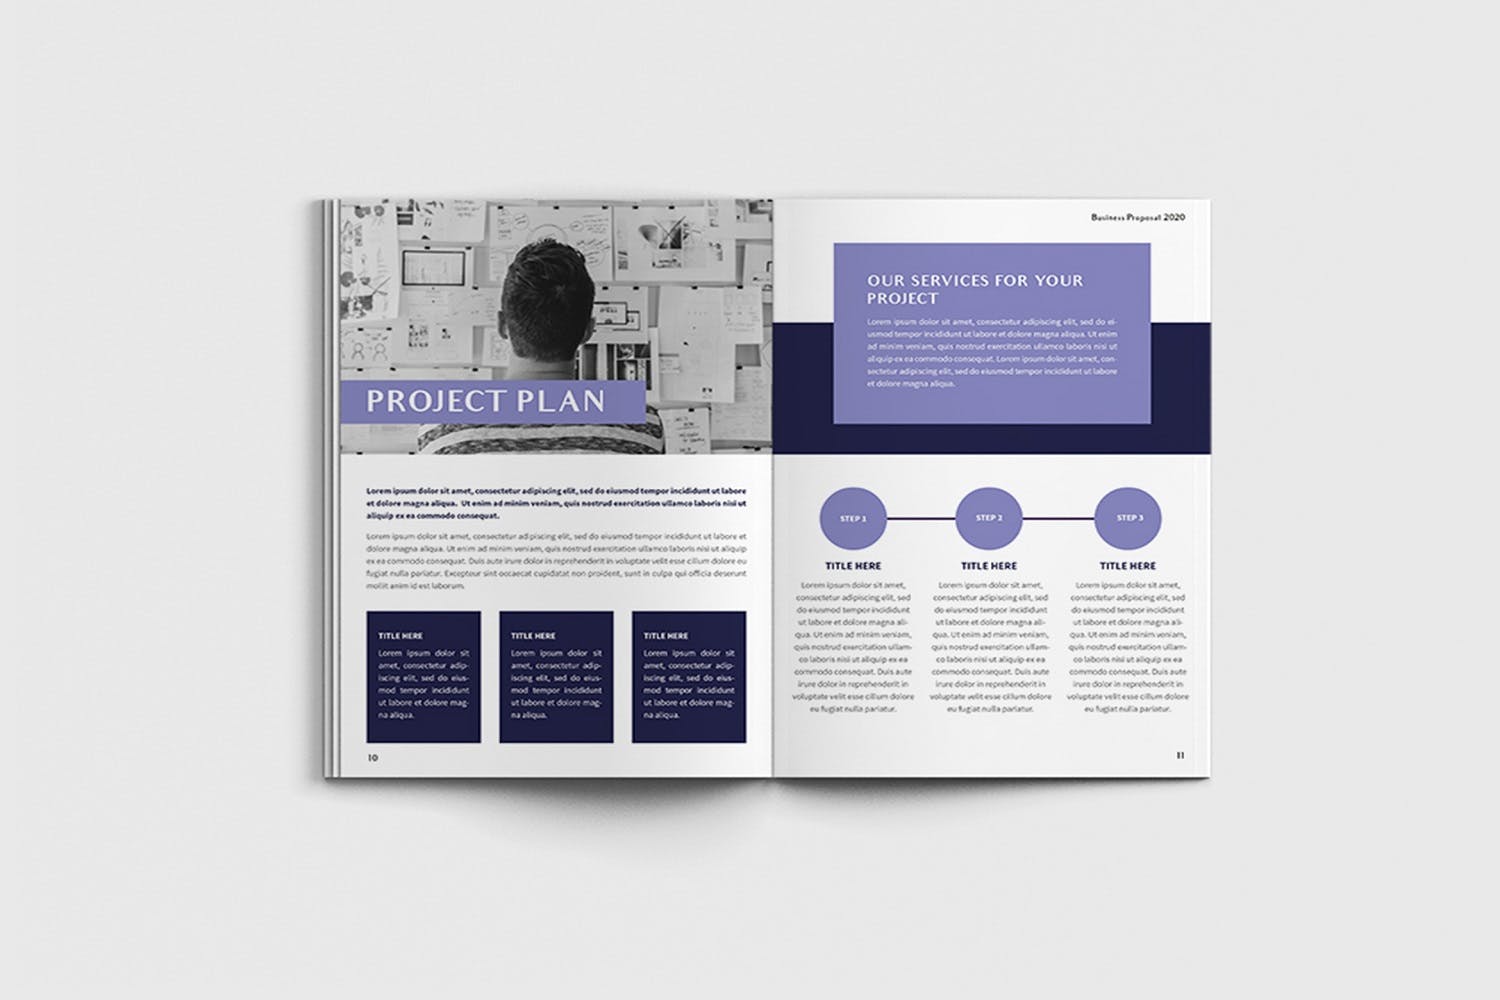 项目规划设计方案/项目解决方案画册设计模板 Exposina – A4 Business Brochure Template插图(5)